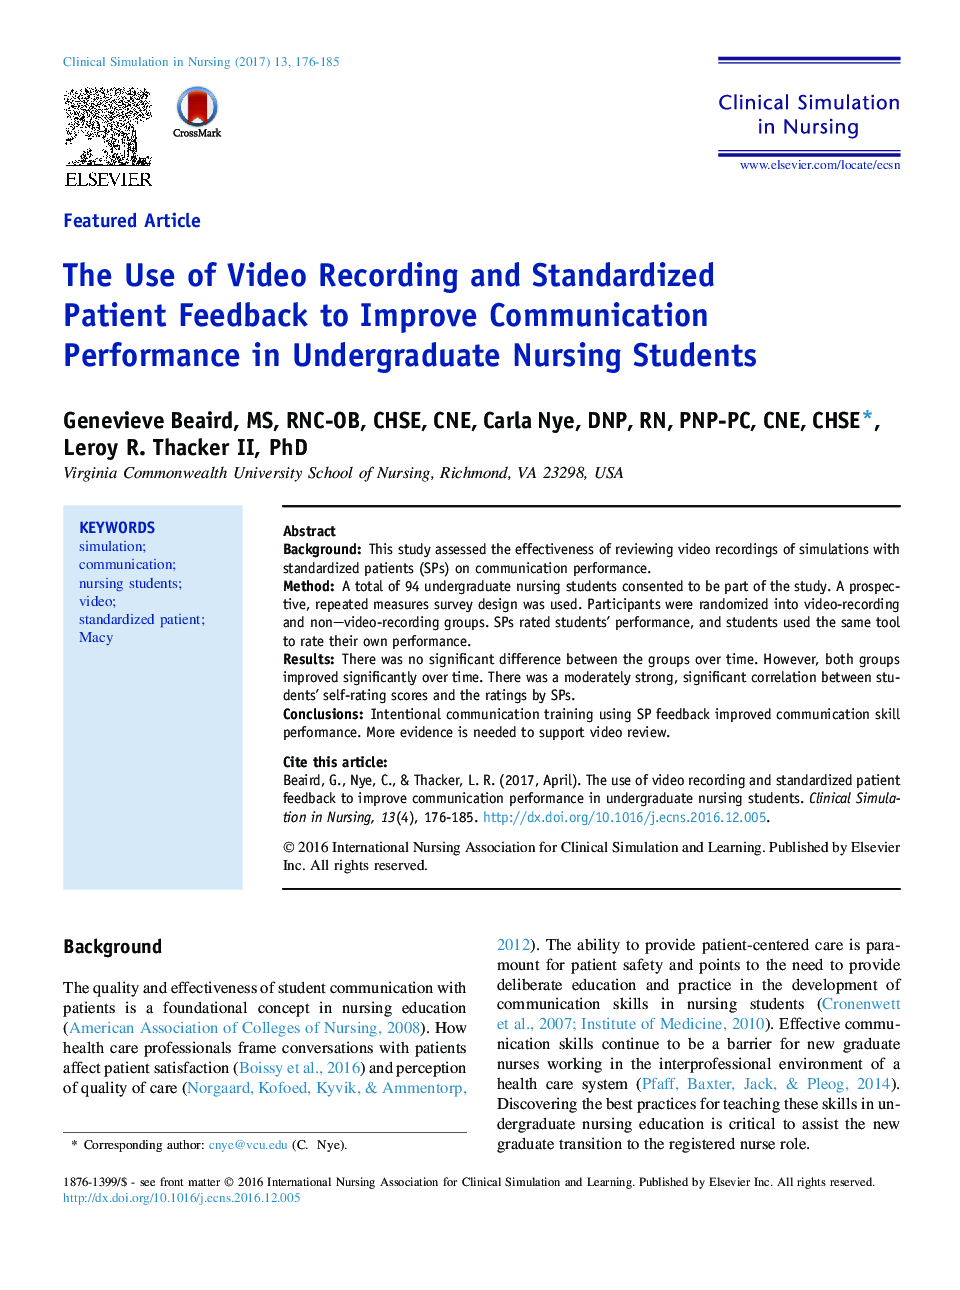 استفاده از ضبط ویدئو و بازخورد بیماران استاندارد برای بهبود عملکرد ارتباطی در دانشجویان پرستاری کارشناسی ارشد 